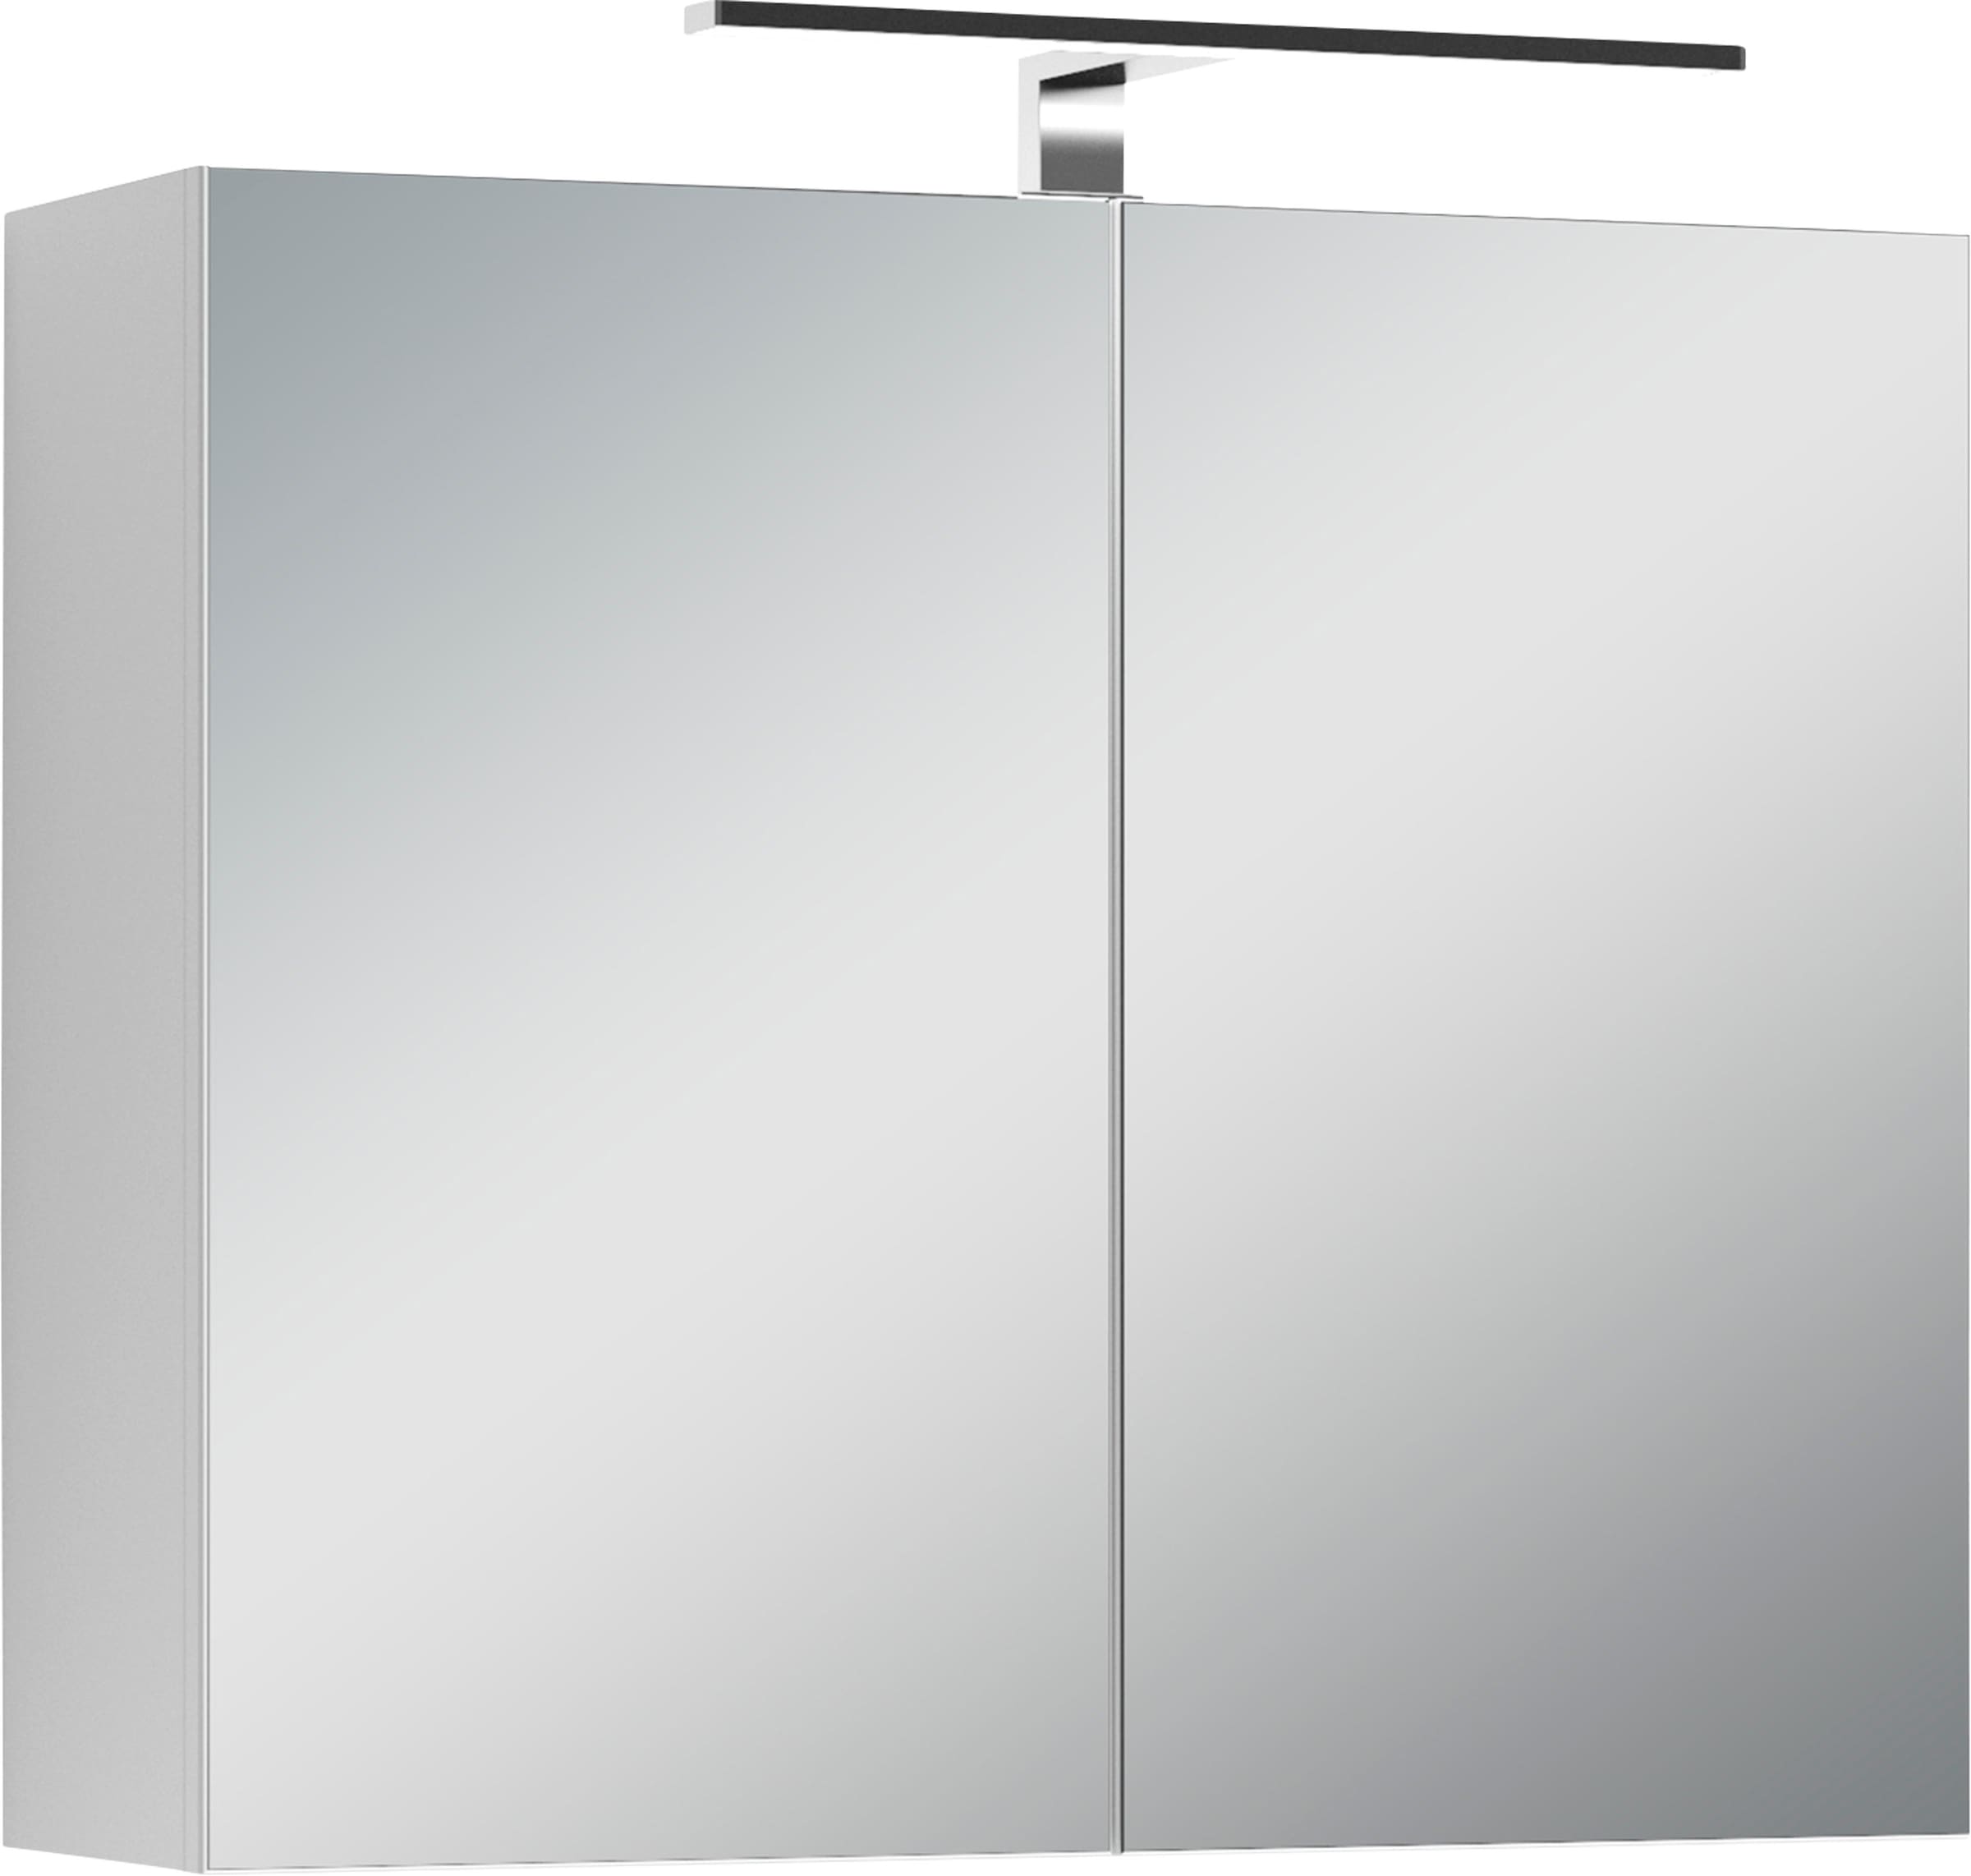 byLIVING Spiegelschrank »Spree«, Breite 70 cm, 2-türig, mit LED Beleuchtung und Schalter-/Steckdosenbox